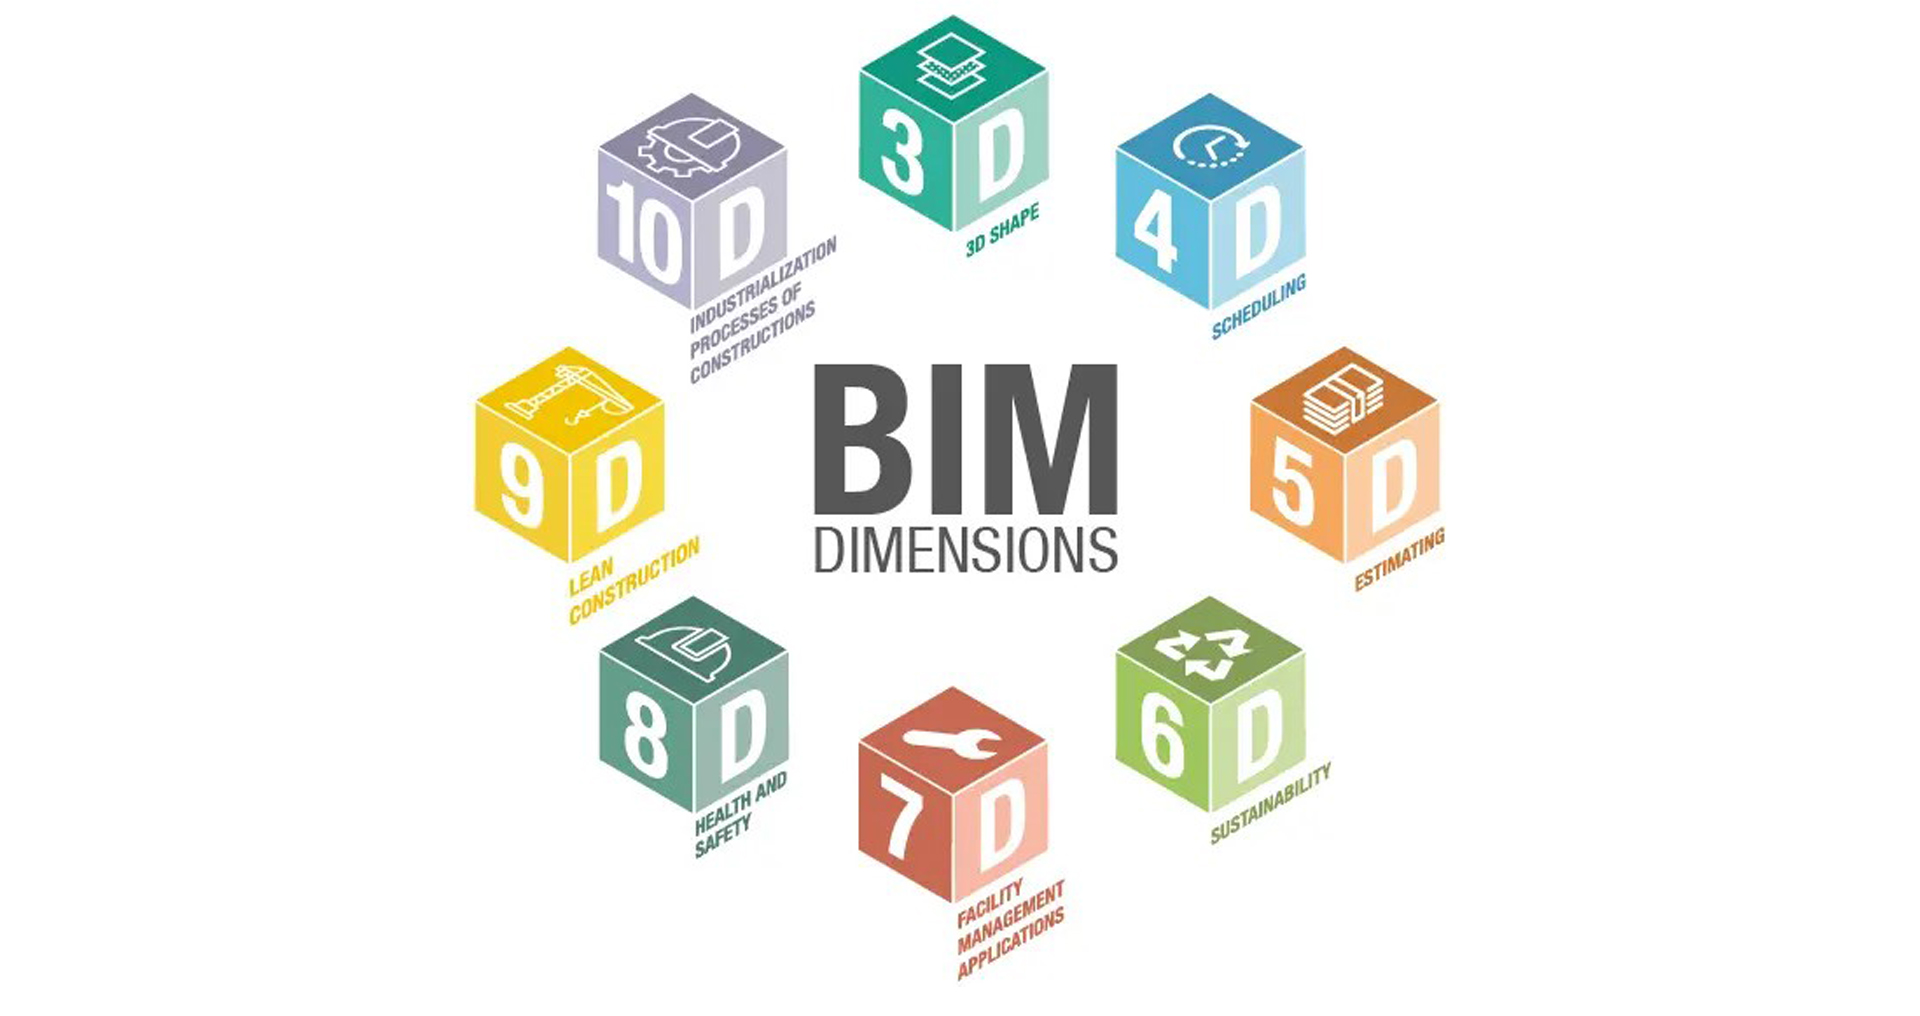 The Dimensions of BIM – 3D, 4D, 5D, 6D, 7D, 8D, 9D, 10D